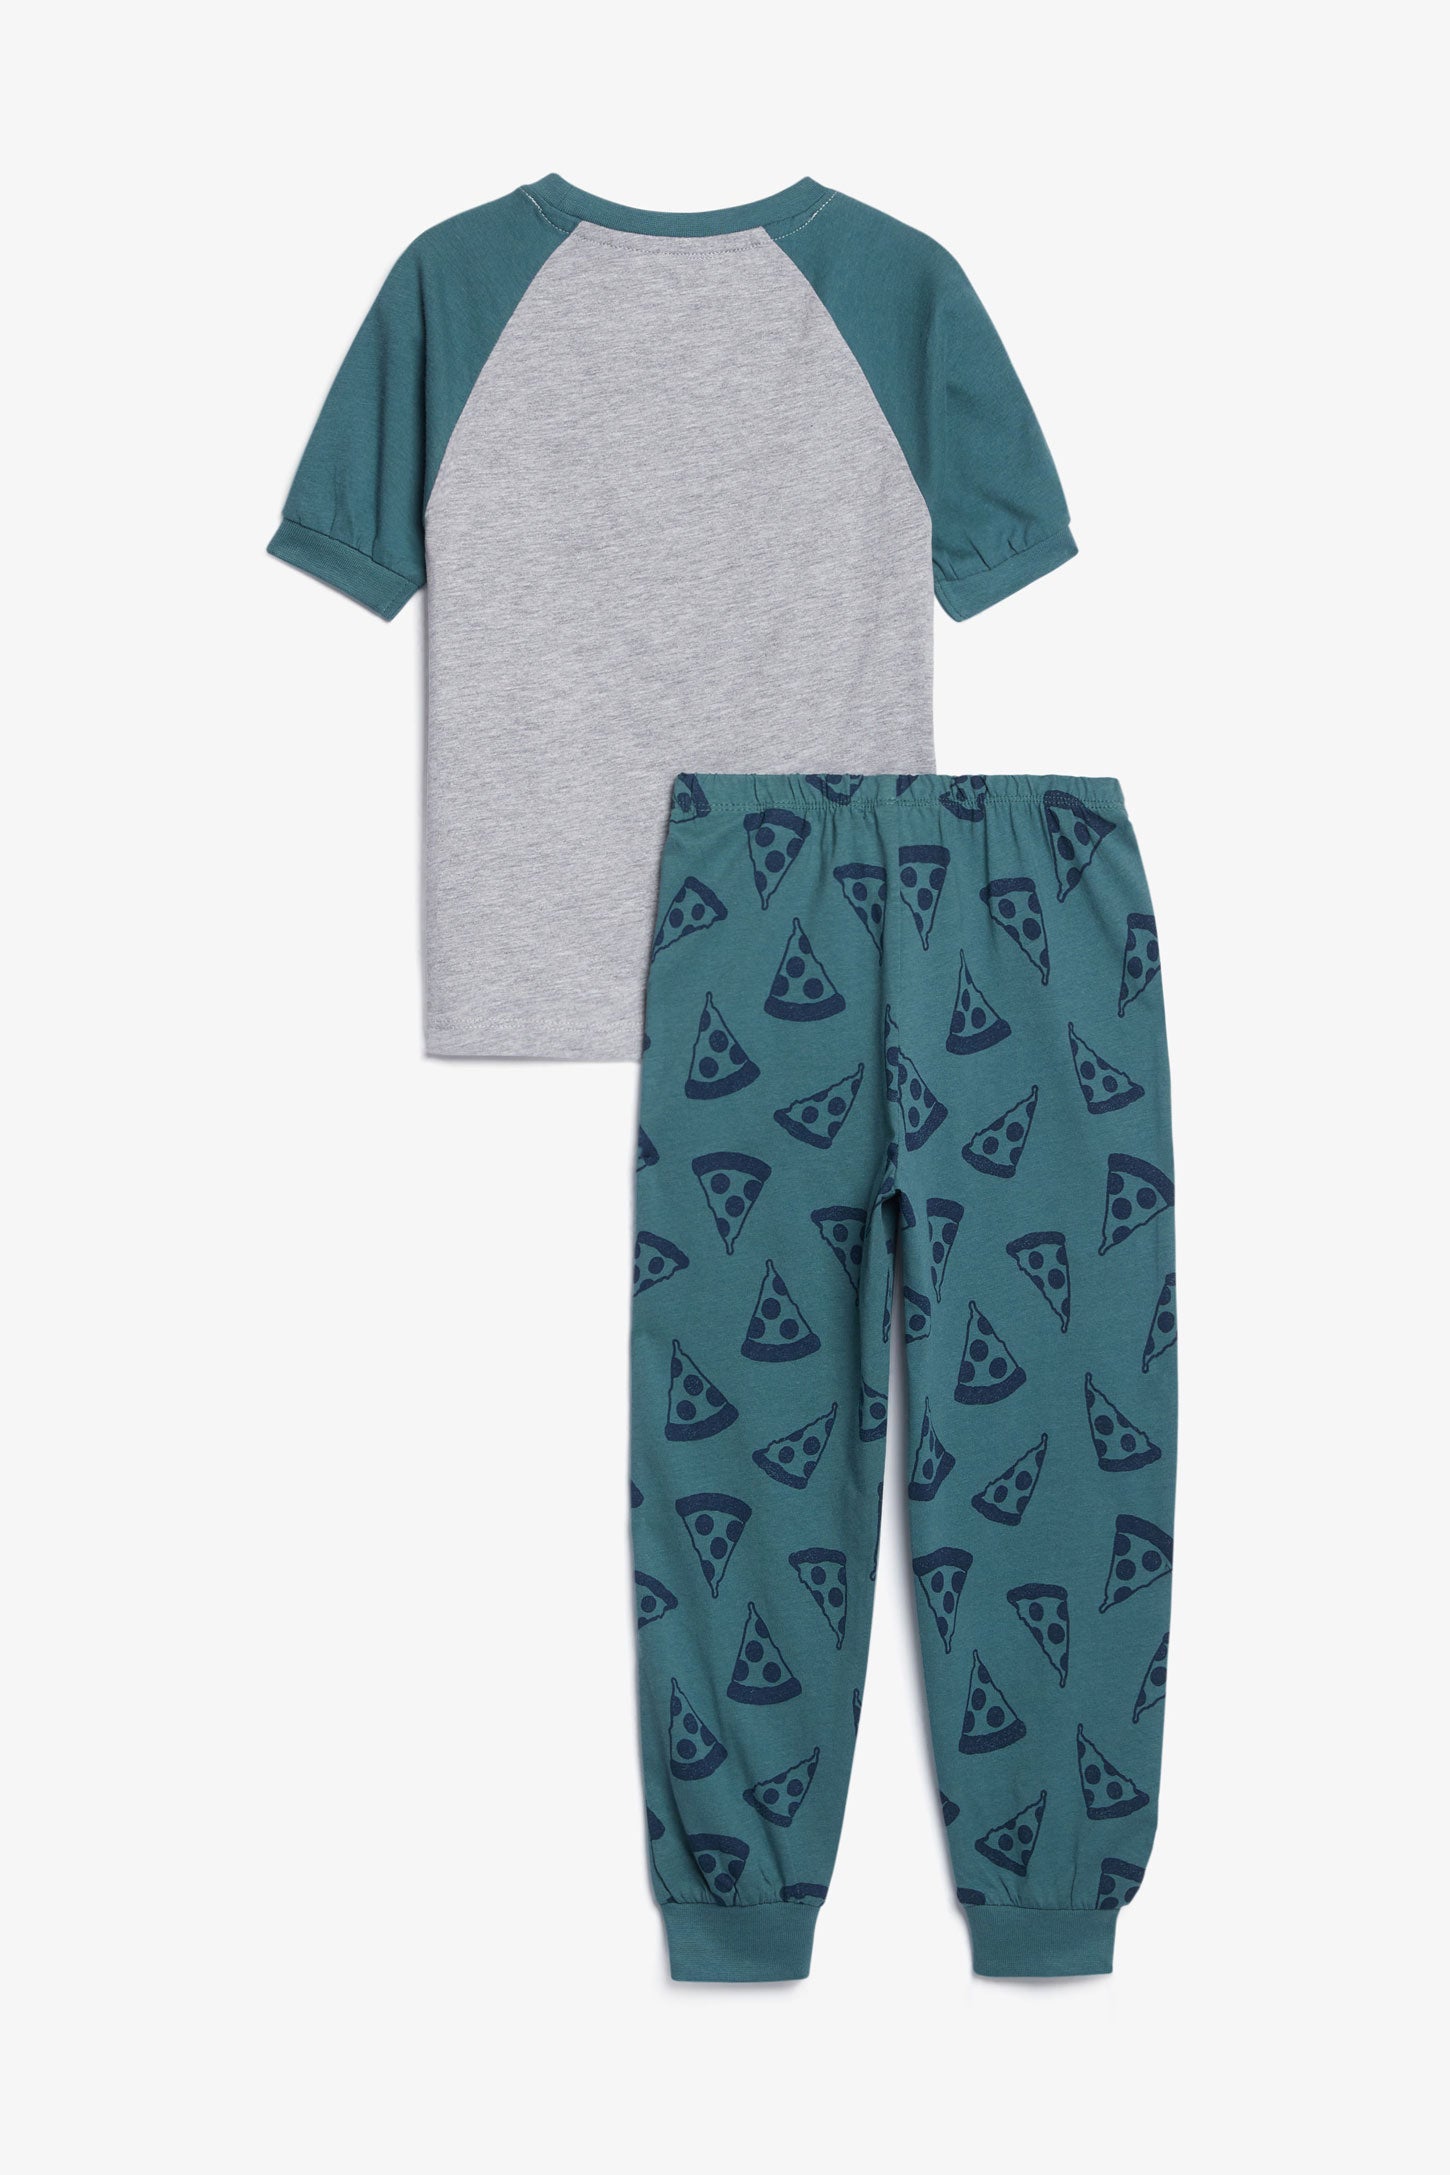 Pyjama 2-pièces en coton, 2/35$ - Enfant garçon && VERT FORET